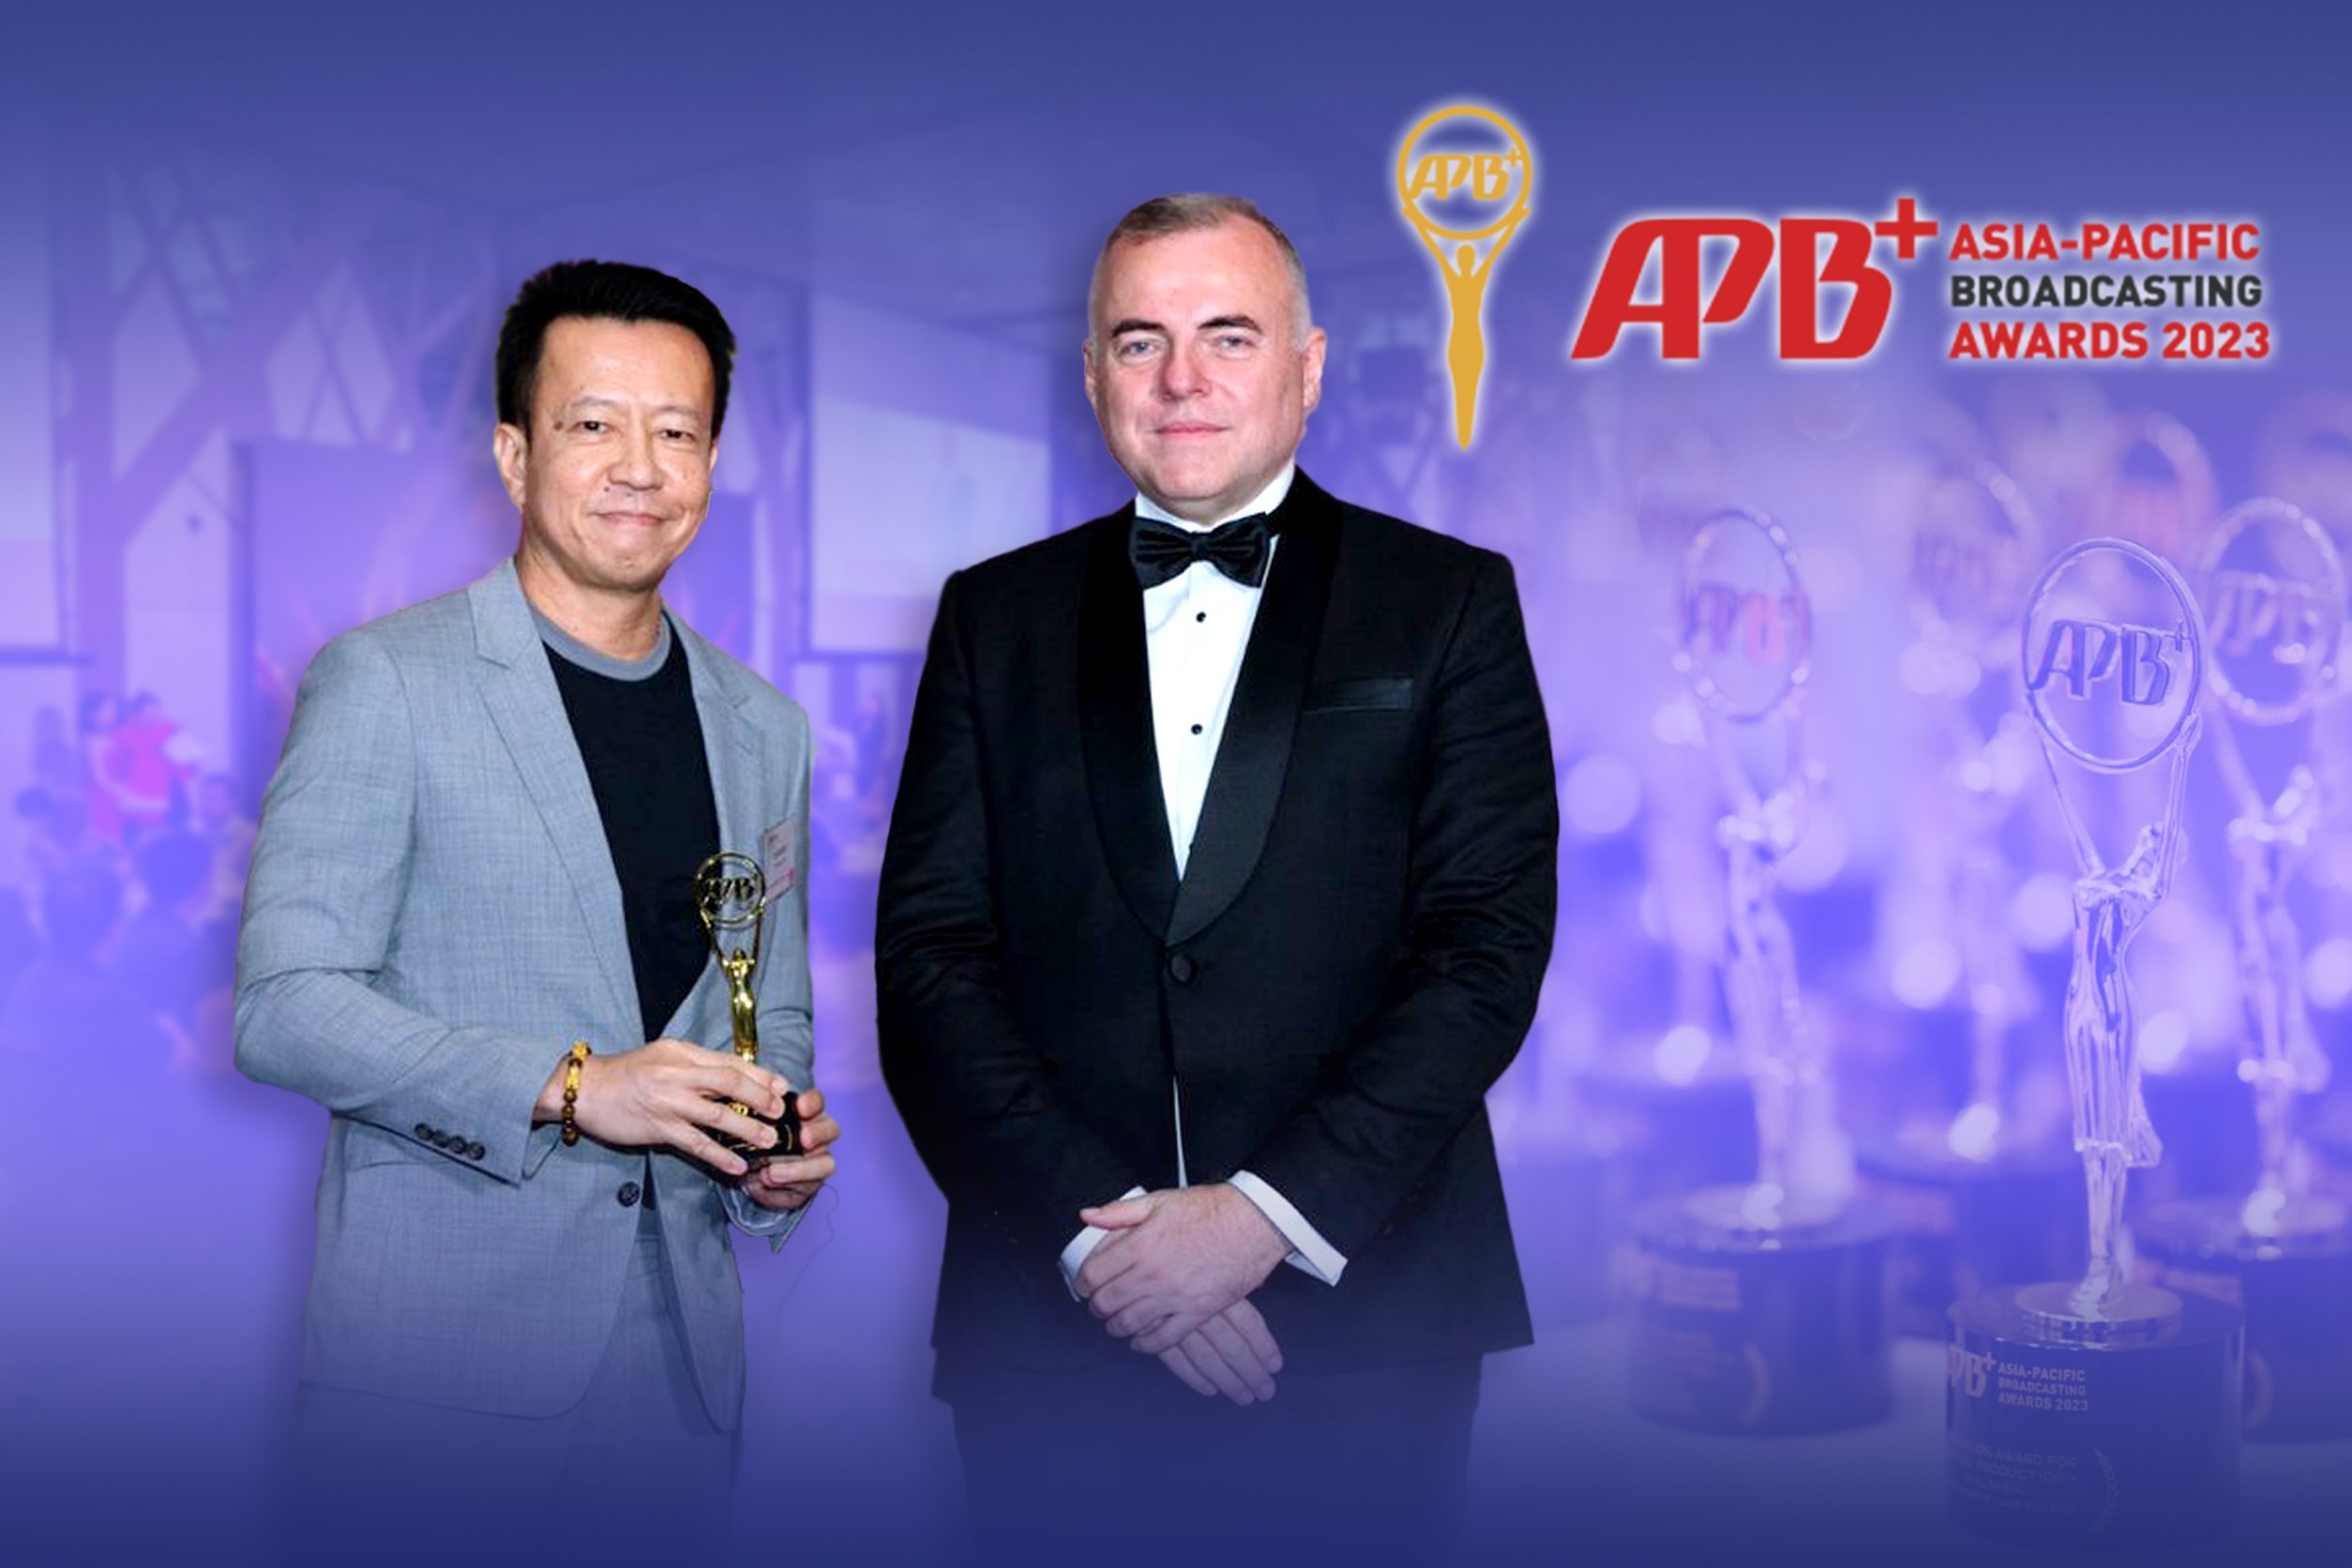 บีอีซี เวิลด์ รับรางวัลจากเวที Asia-Pacific Broadcasting+ Awards 2023